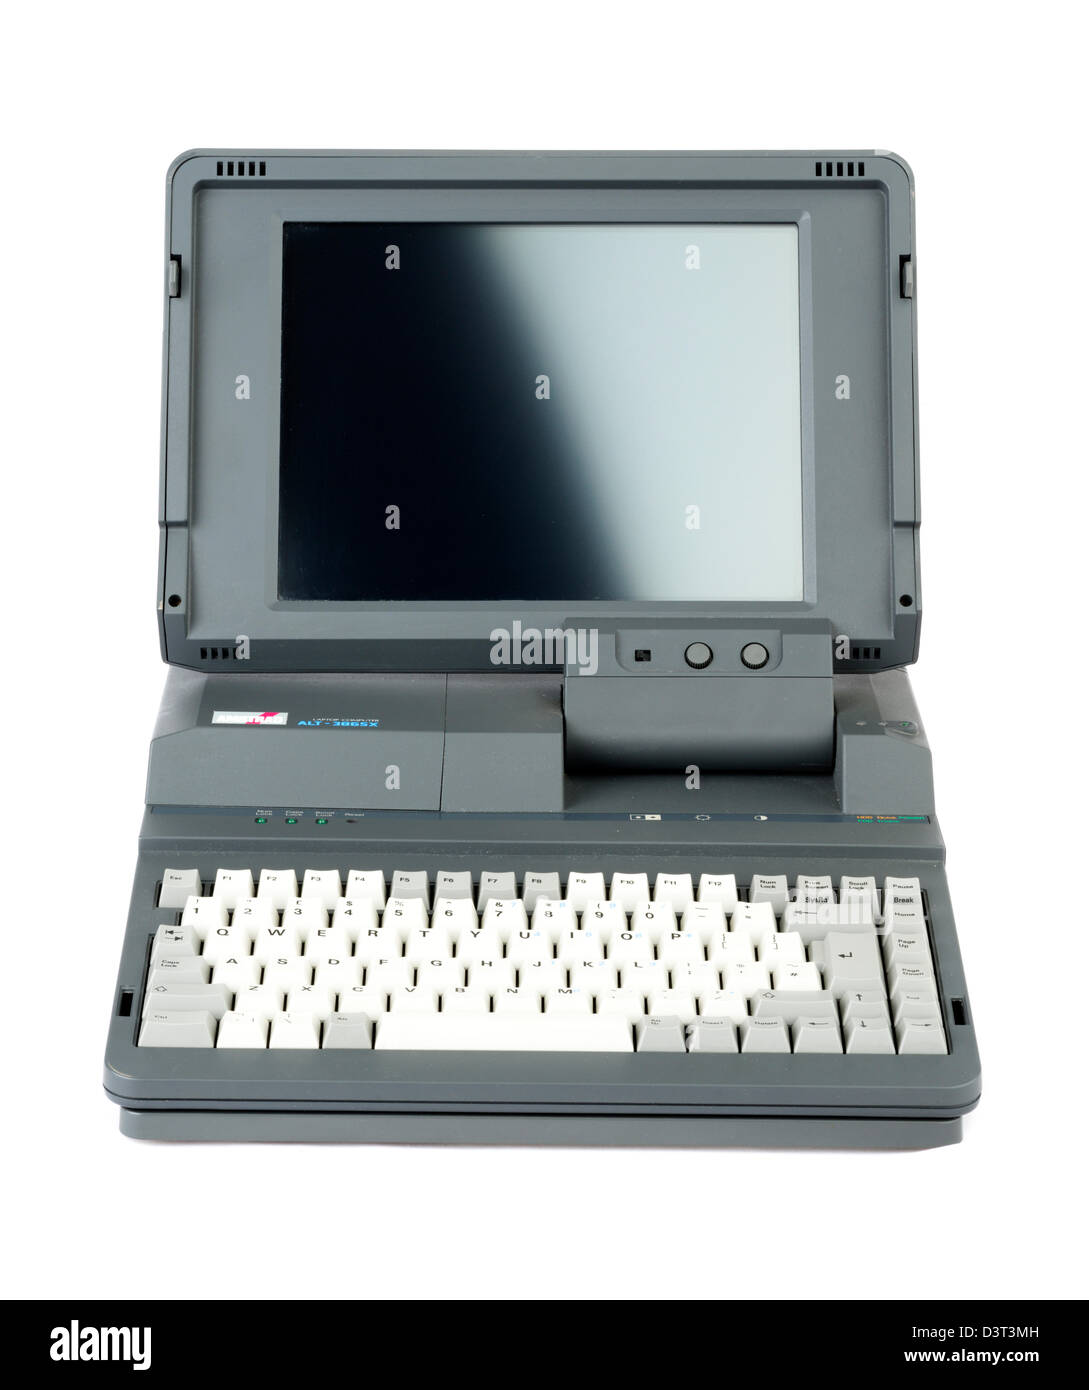 Un vieux IT-386SX Amstrad Alt'ordinateur portable, l'un des premiers ordinateurs portables à prix abordable lancée en 1988 Banque D'Images